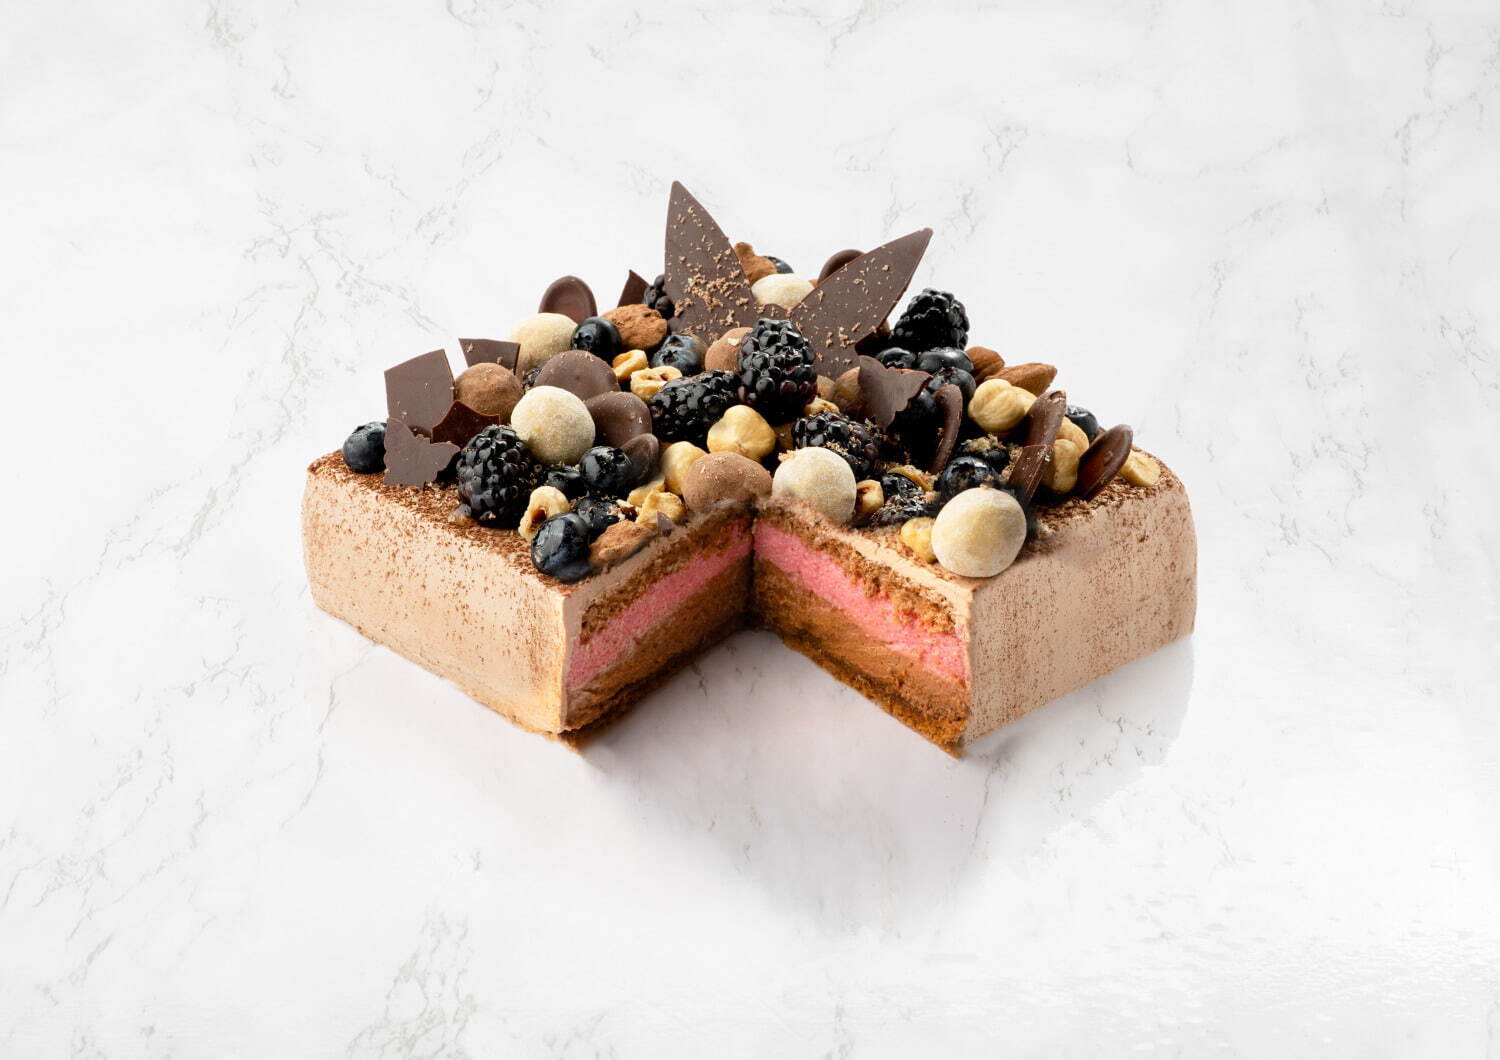 「バースデーケーキ」チョコレート 15×15cm 7,560円